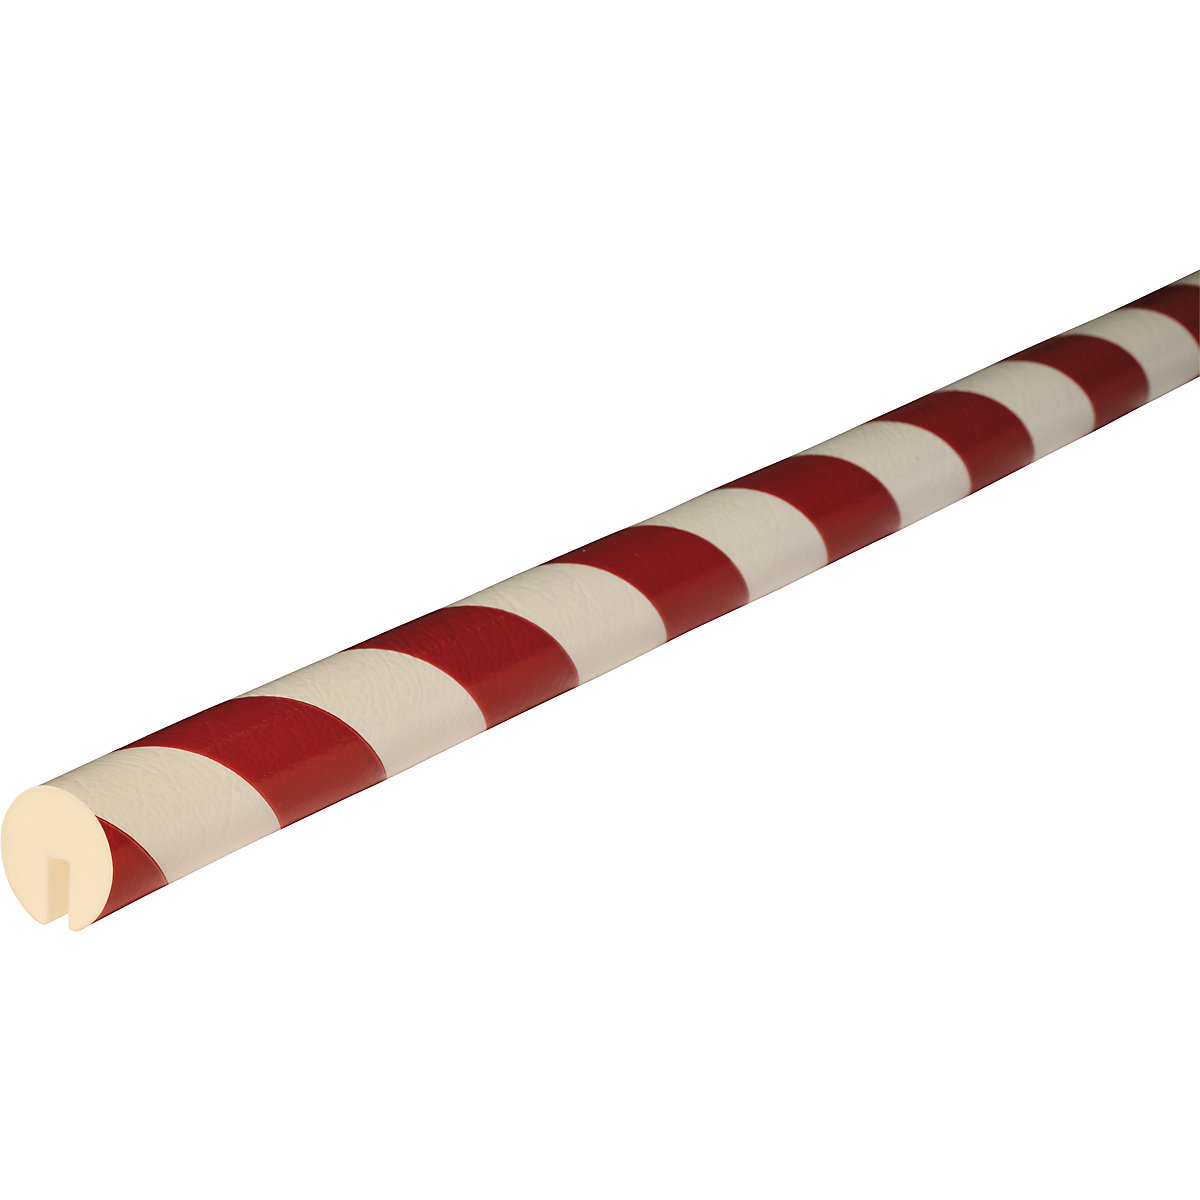 Protection des arêtes Knuffi® – SHG, type B, 1 rouleau de 50 m, rouge/blanc